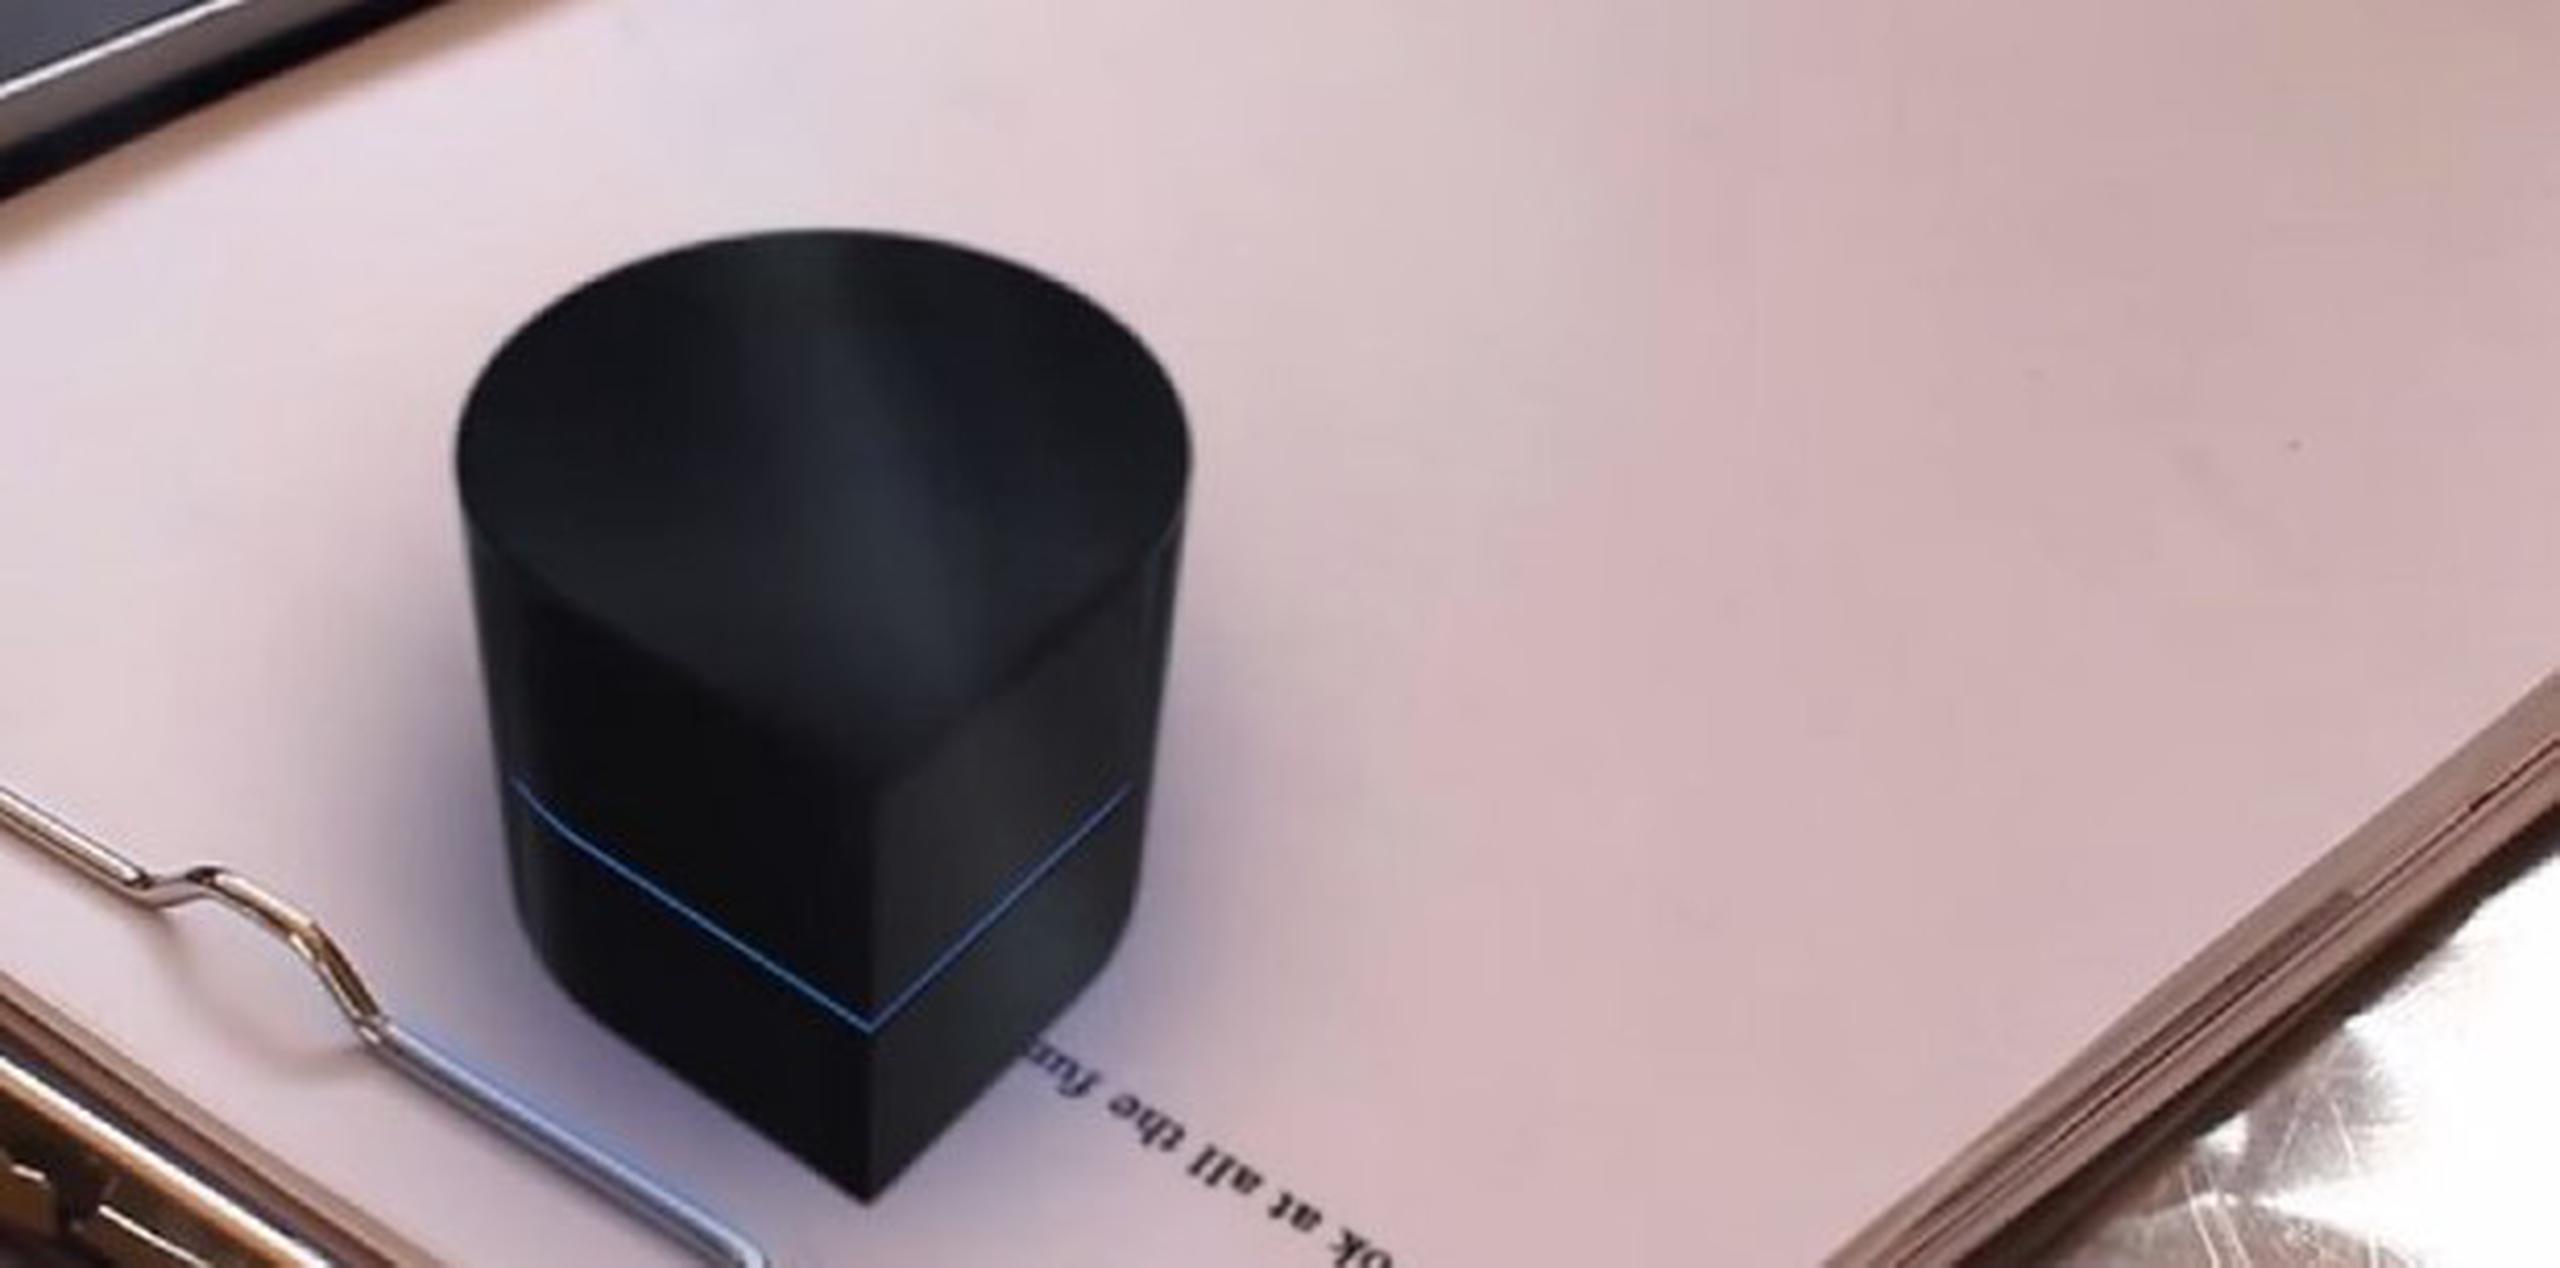 Zuta Pocket Printer es un robot en forma de lágrima que luego de recibir la señal inalámbrica de imprimir desde el dispositivo móvil o la laptop, recorre la superficie del papel para trasladar la información en forma física. (YouTube)